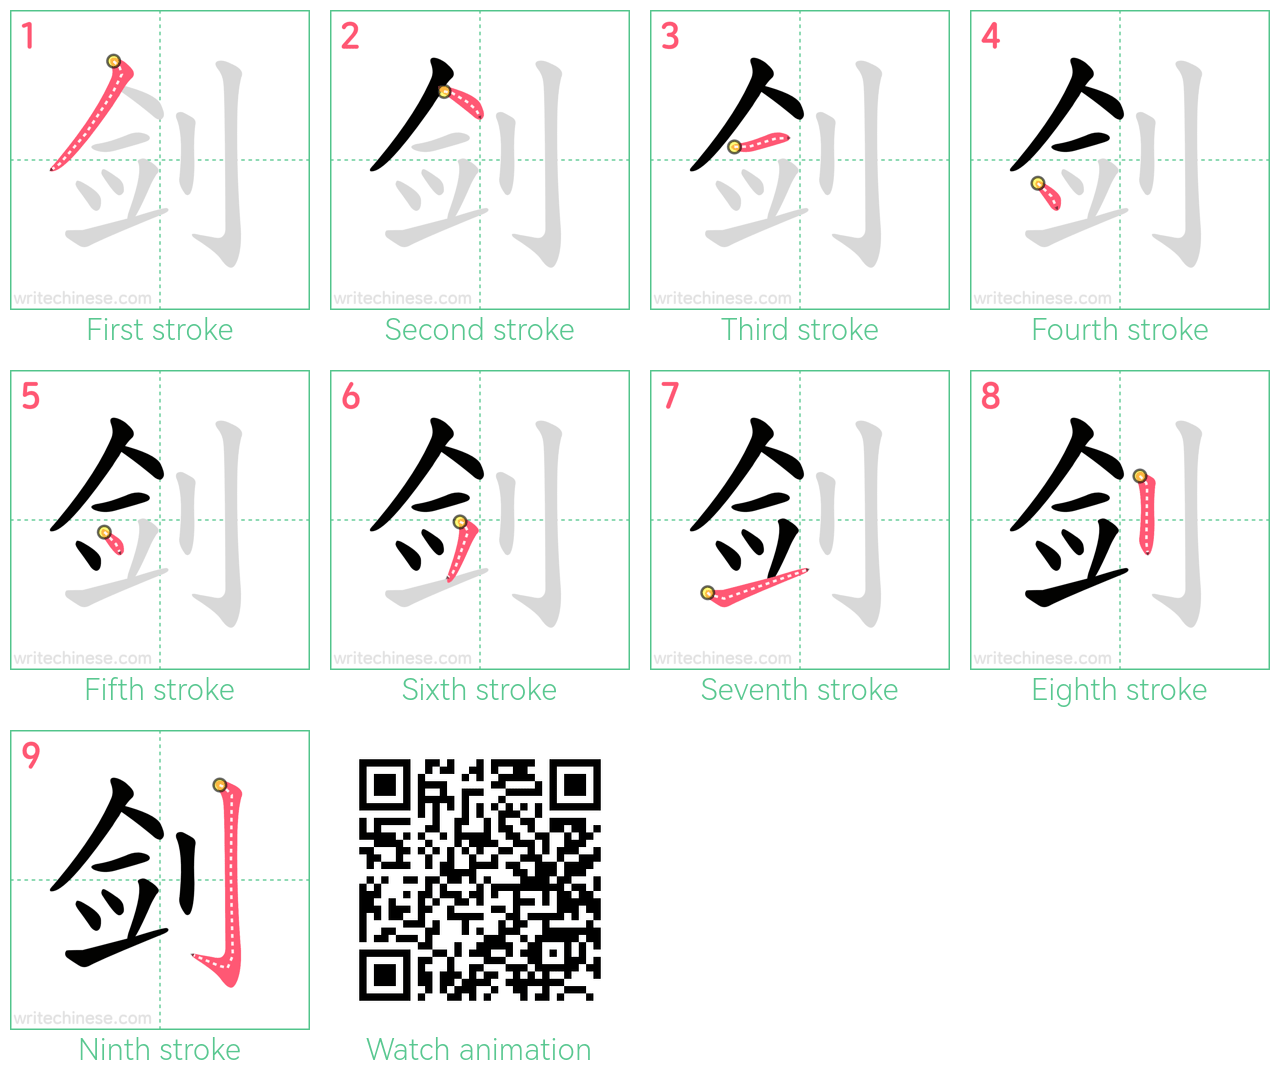 剑 step-by-step stroke order diagrams